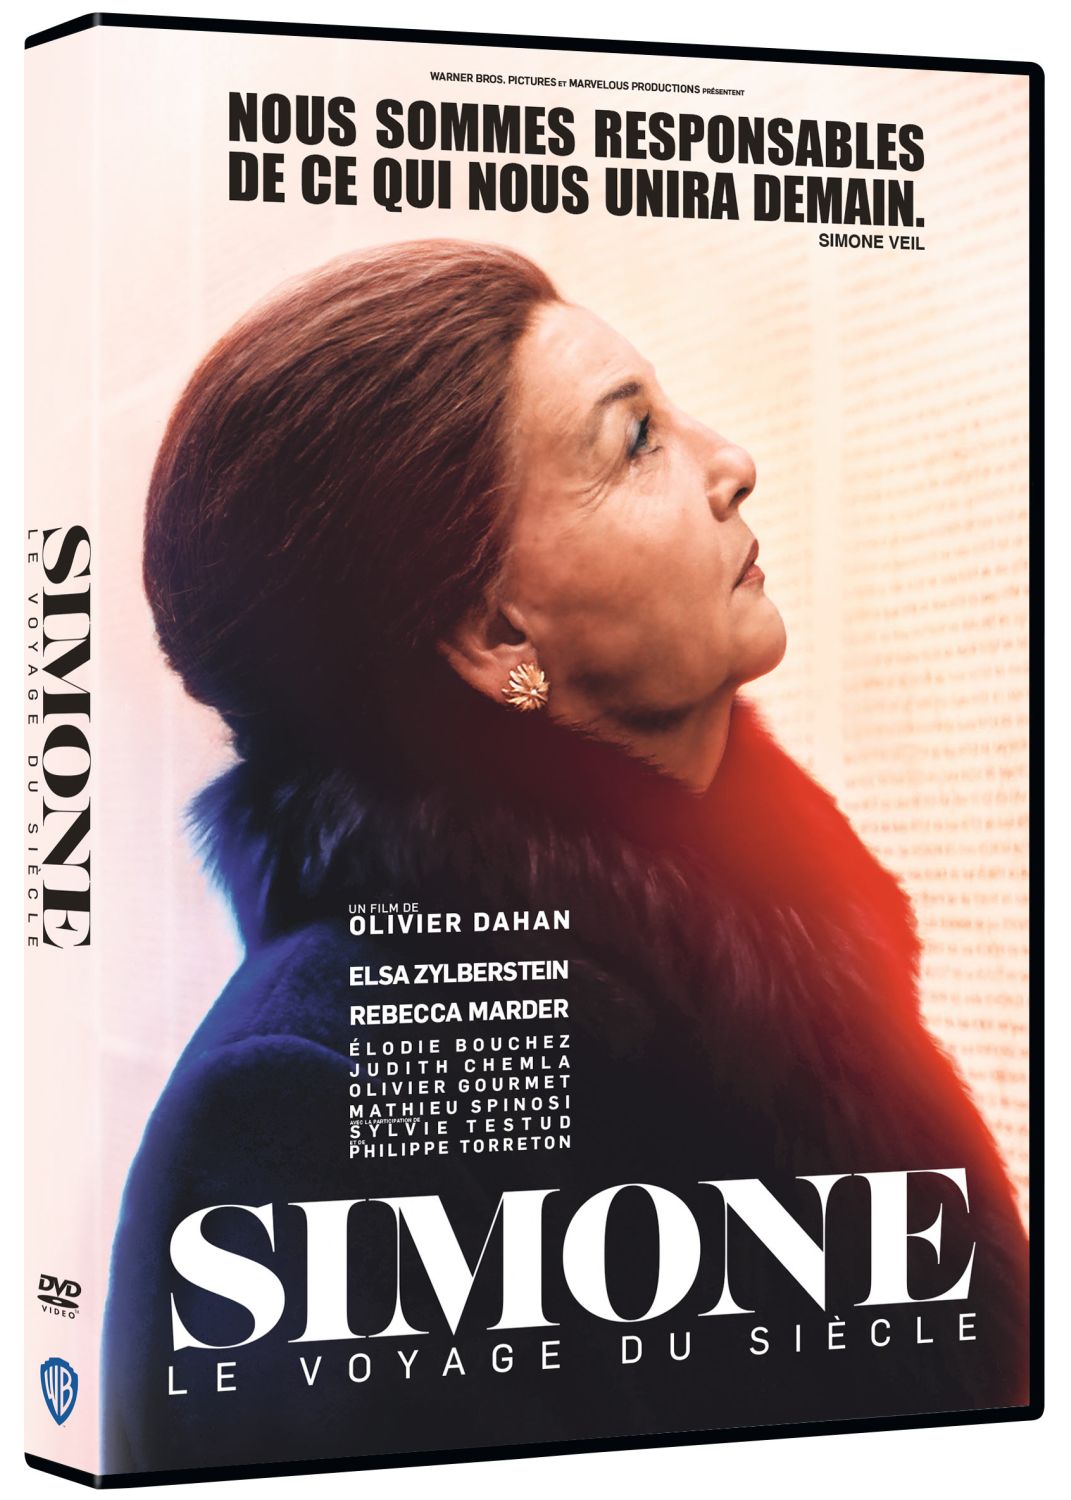 Simone, le voyage du siècle |DVD à la location]